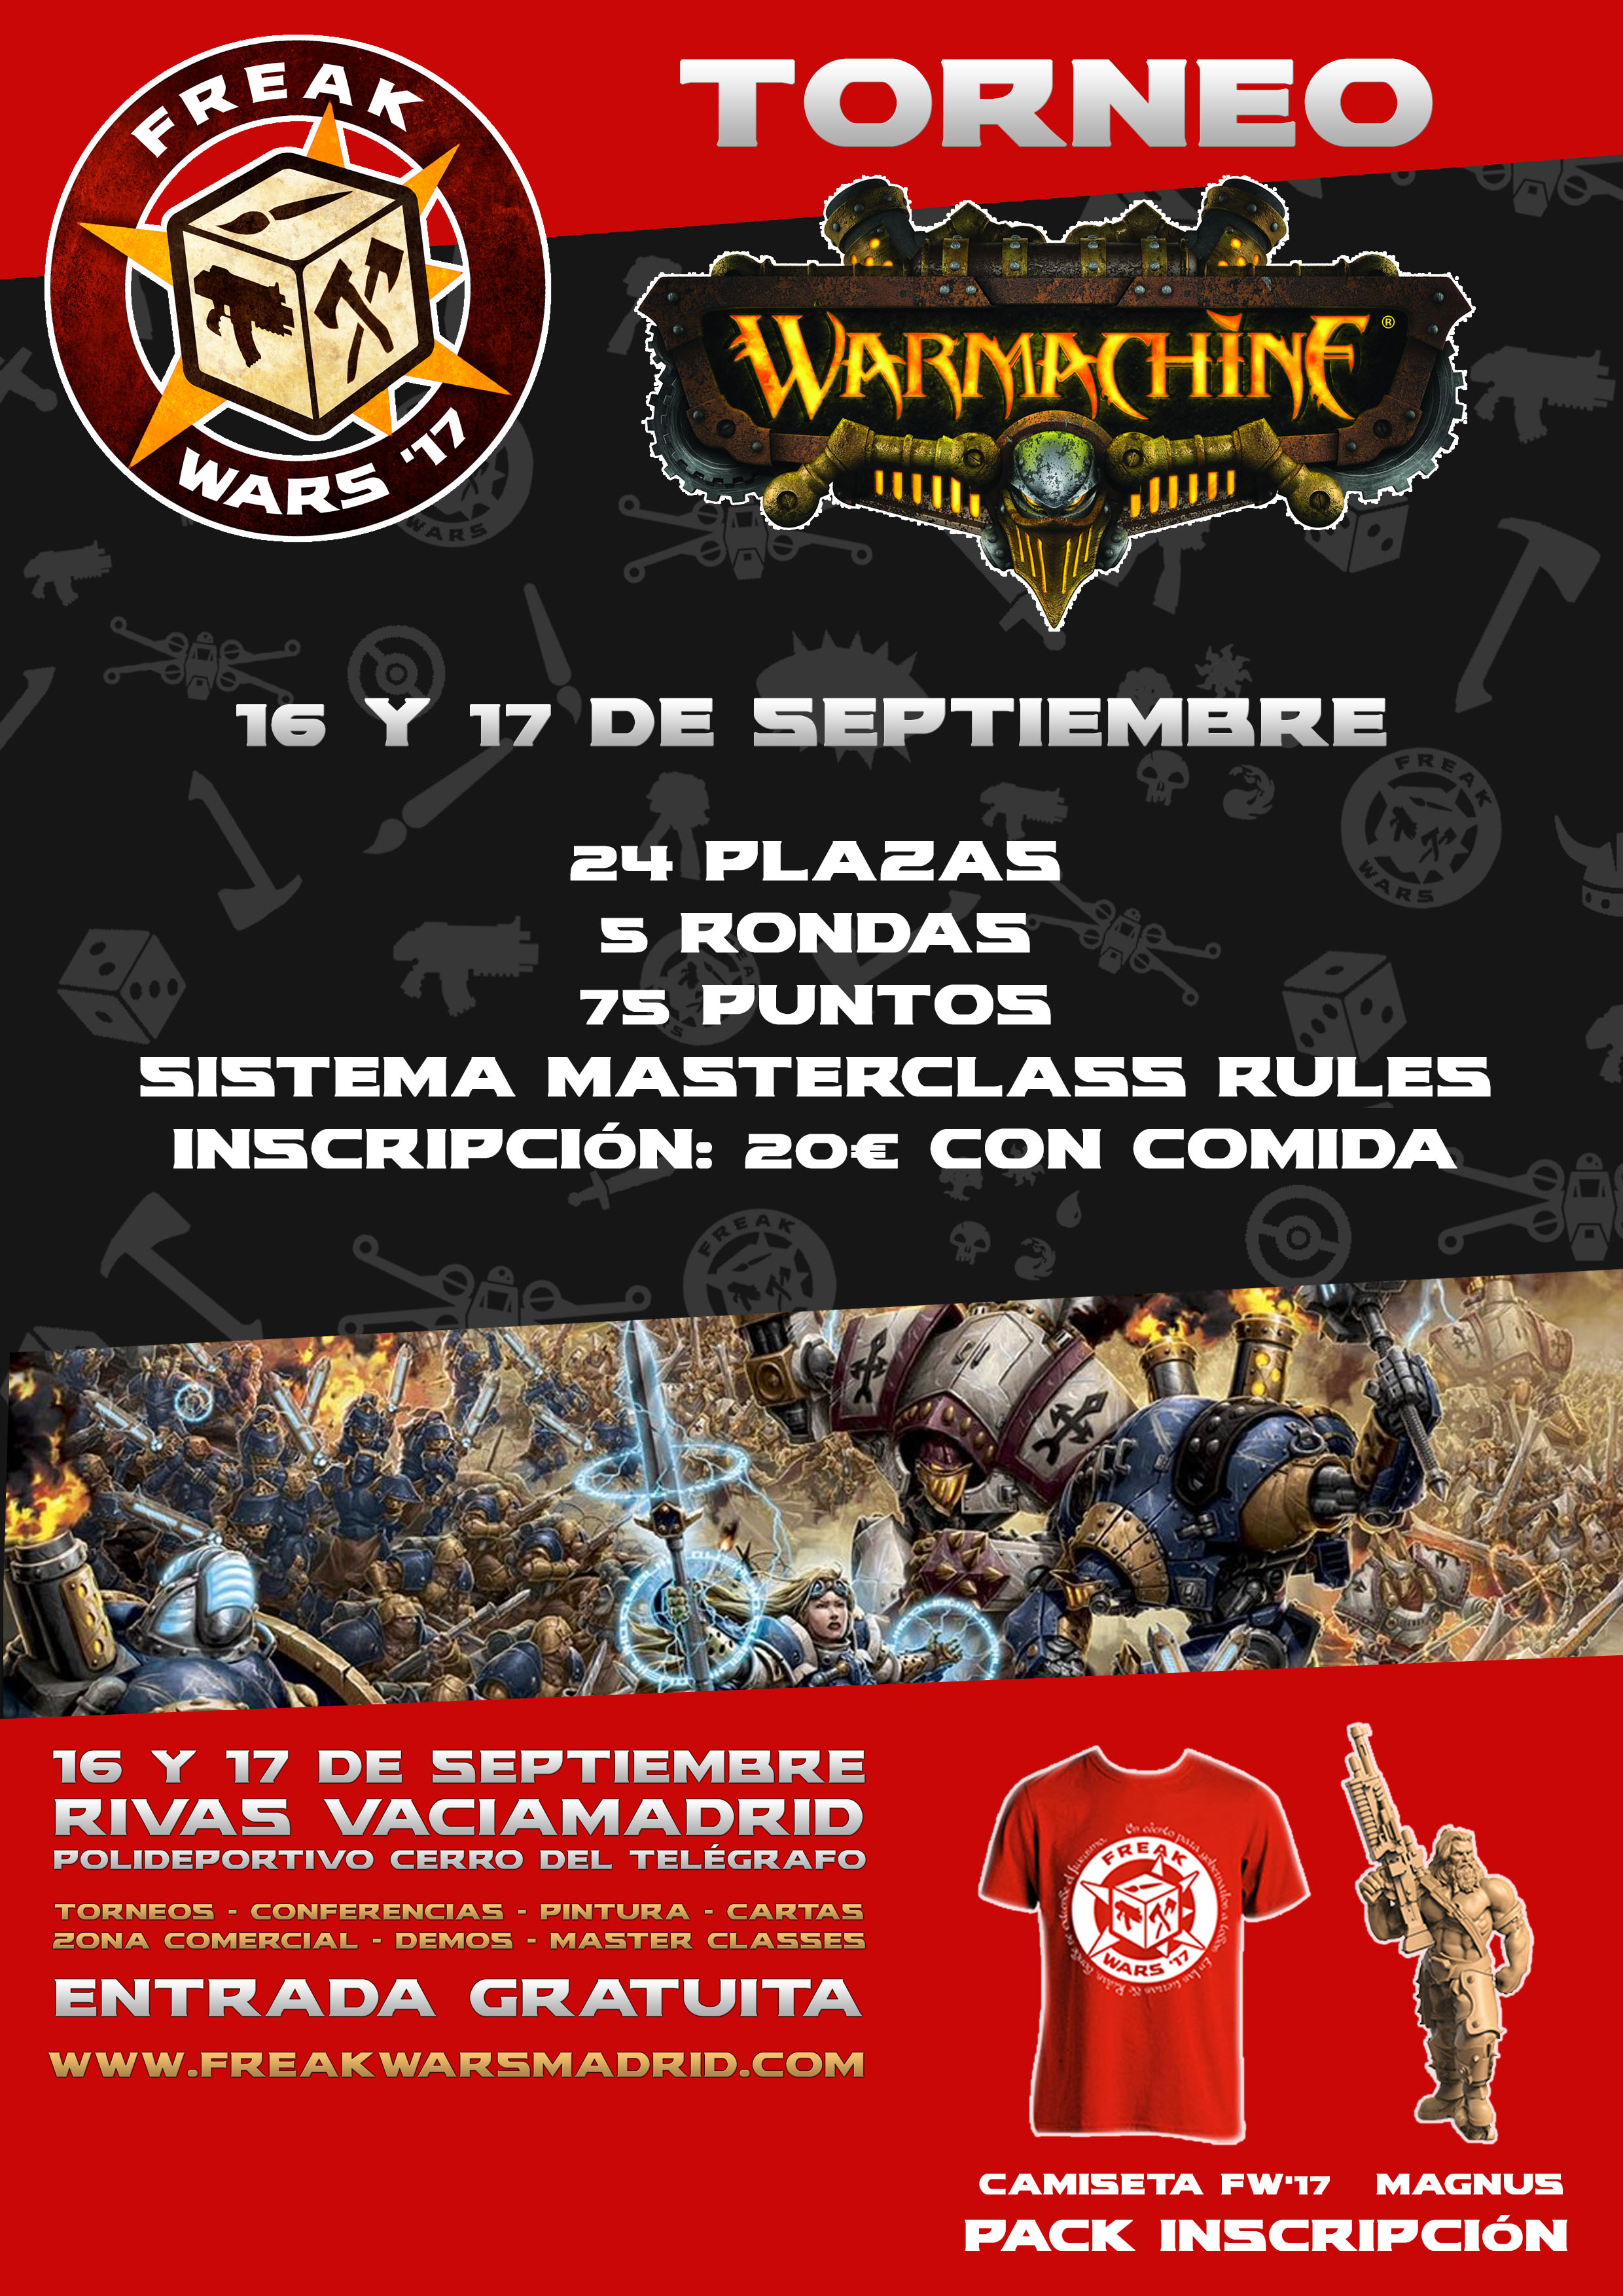 Torneo Warcmachine 2017